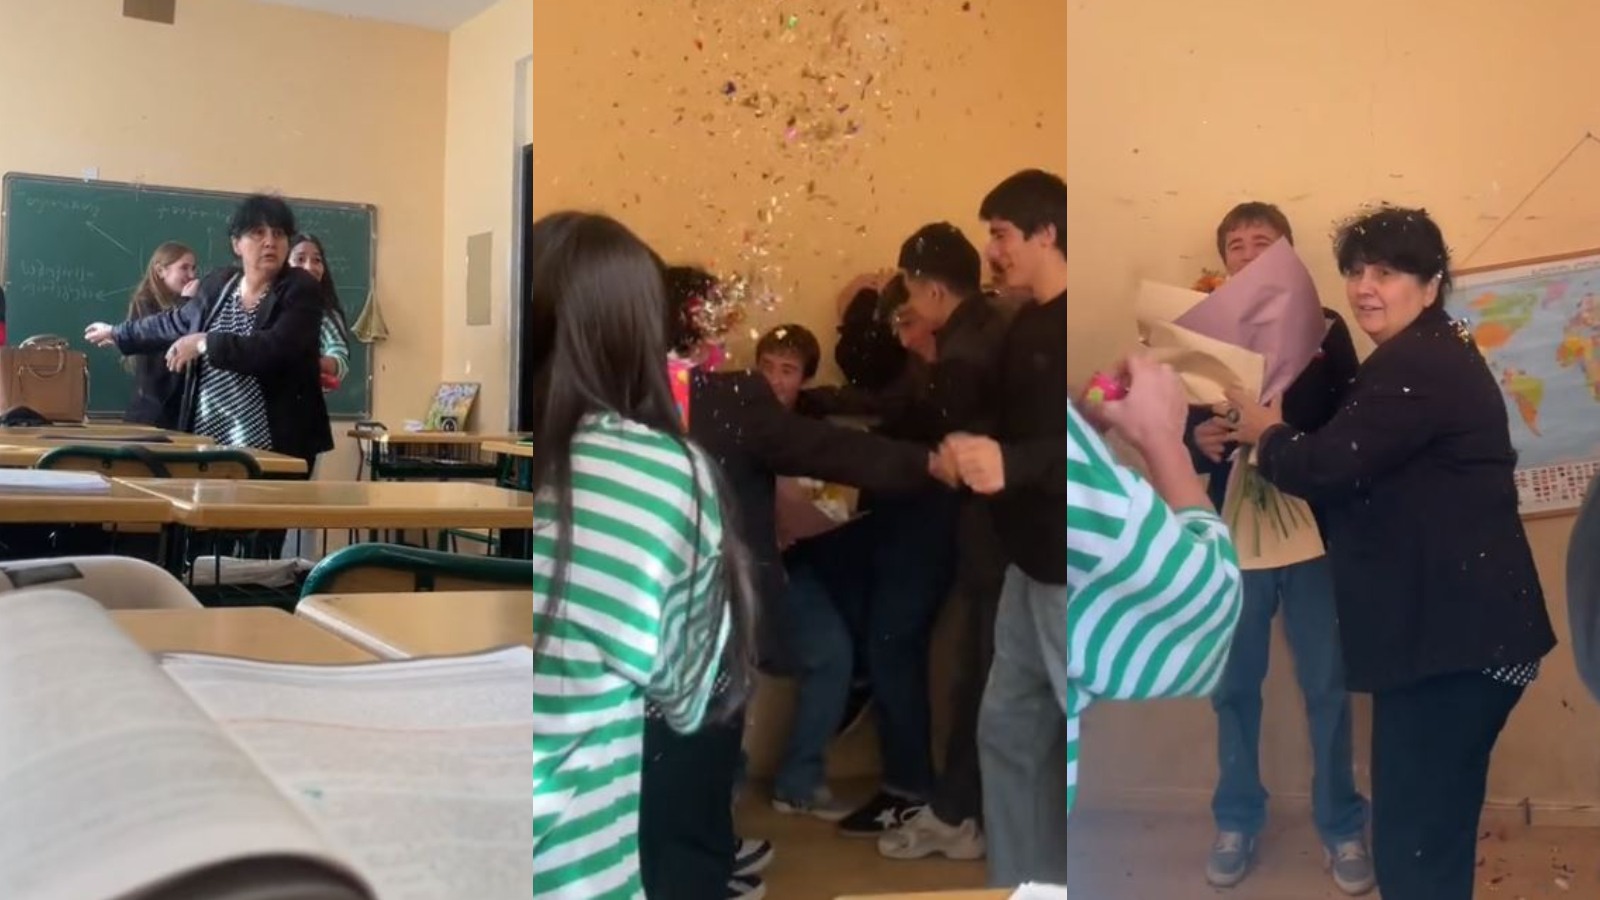 Estudiantes sorprenden a su profesora por su cumpleaños fingiendo una pelea